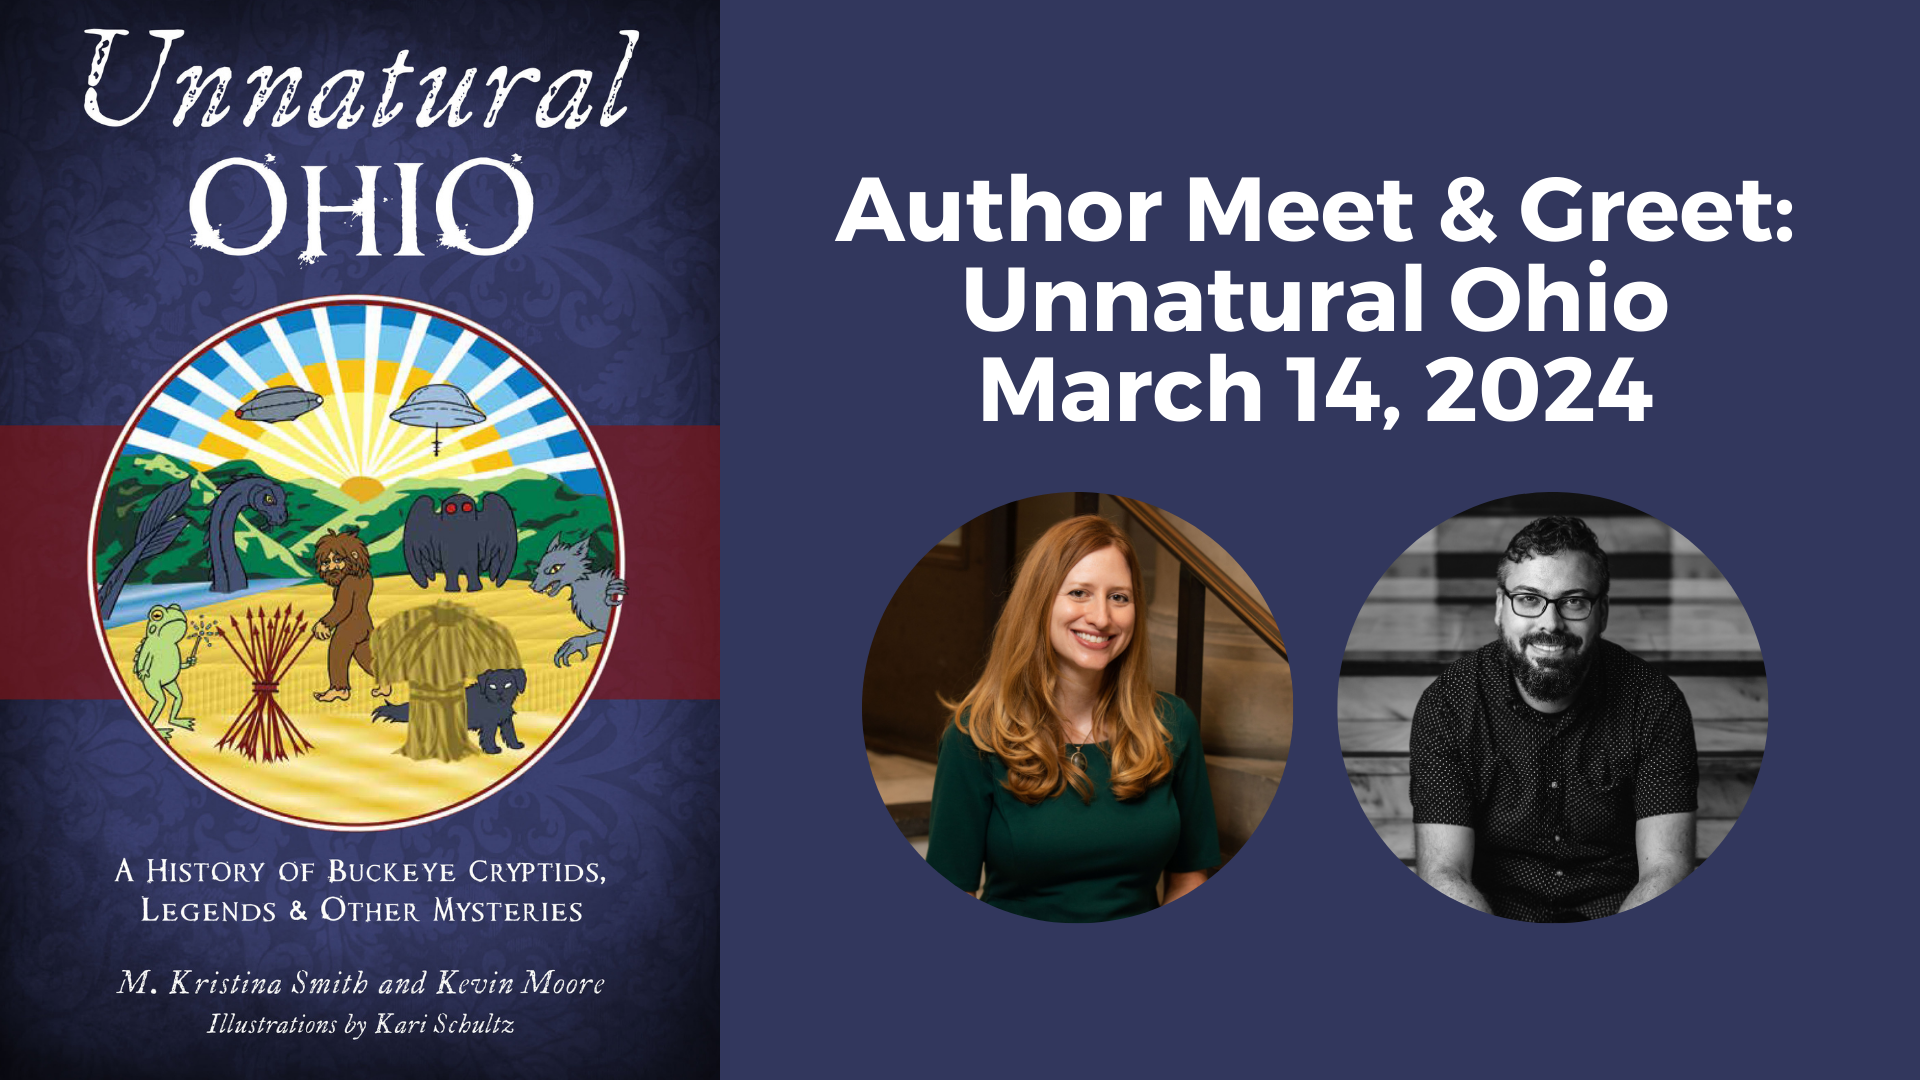 Author Meet & Greet: Unnatural Ohio